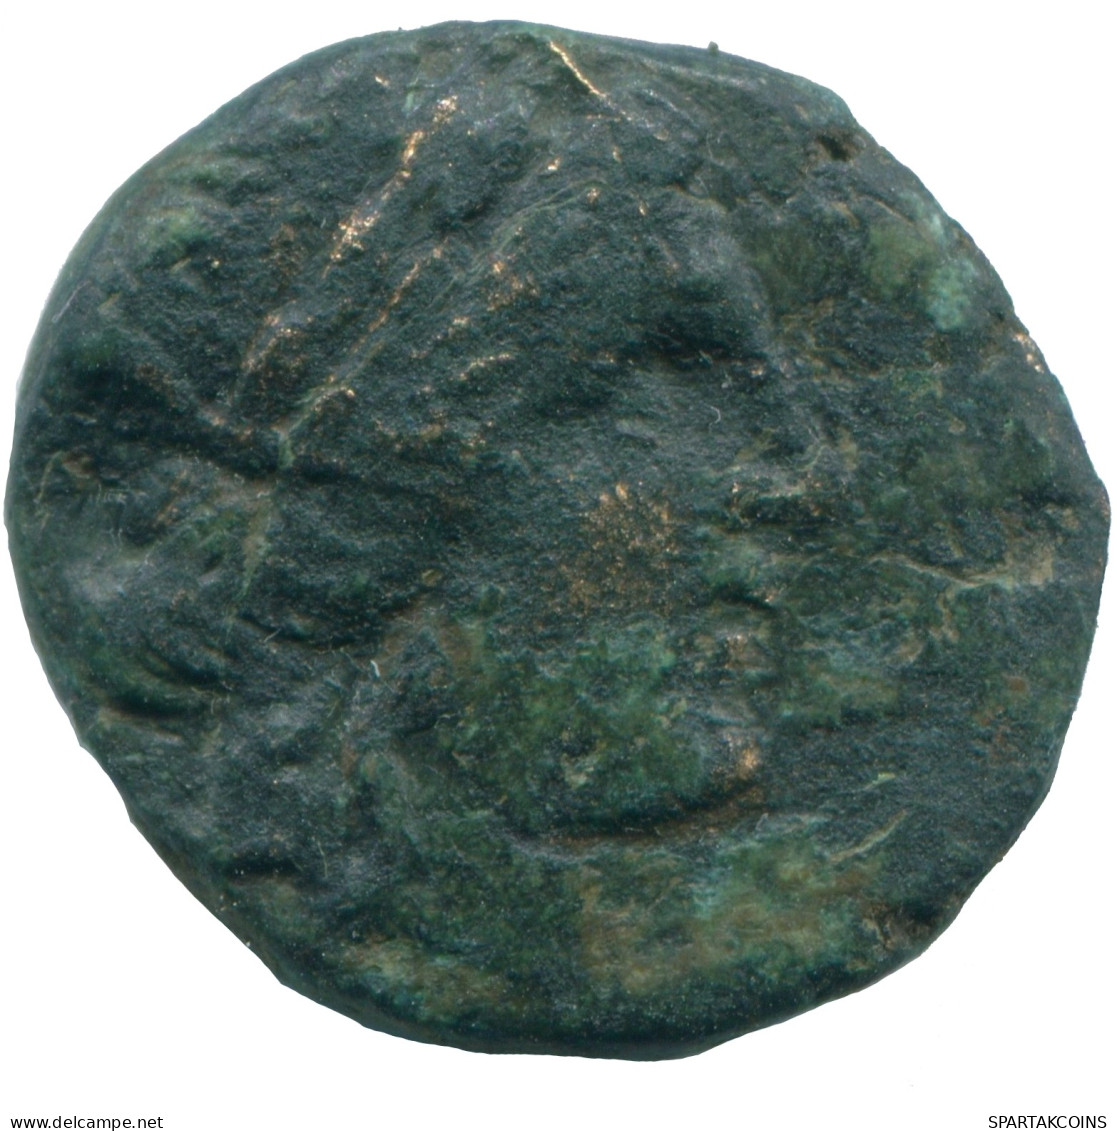 Authentic Original Ancient GRIECHISCHE Münze ATHENA 6.6g/19.6mm #ANC13018.7.D.A - Greek